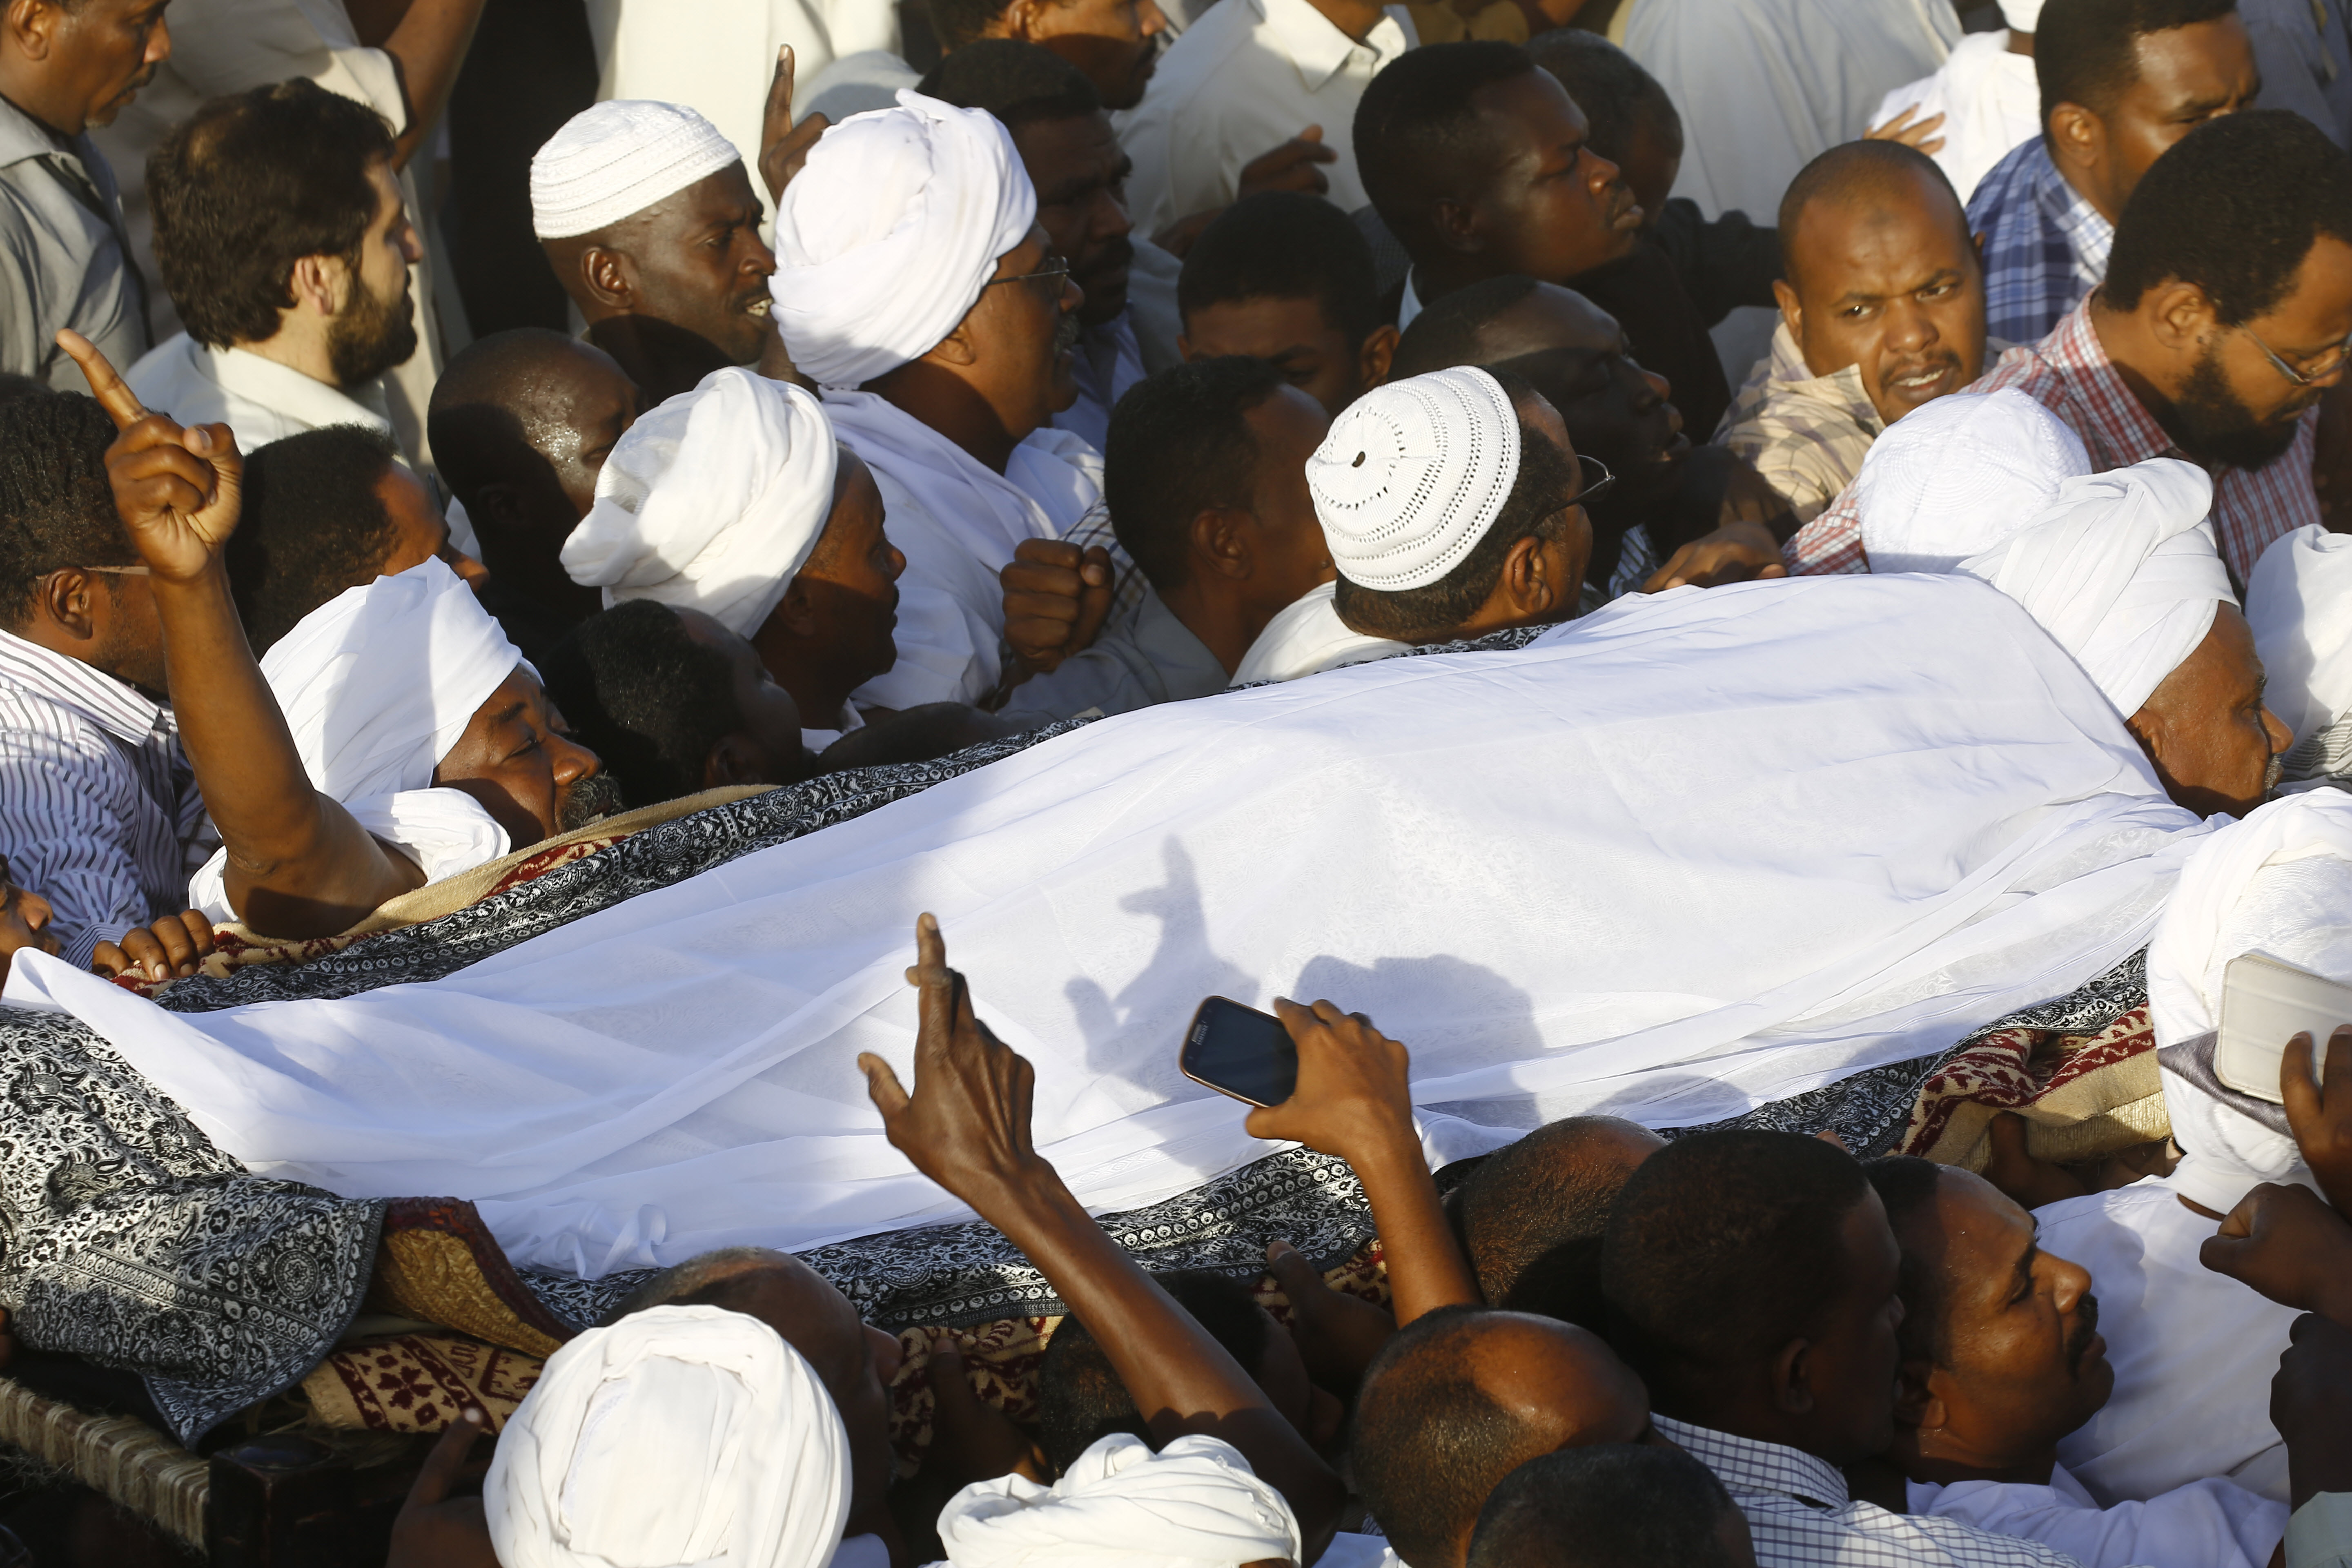 تشييع الزعيم الإسلامي المعارض حسن الترابي وسط إجراءت أمنية مشددة في الخرطوم